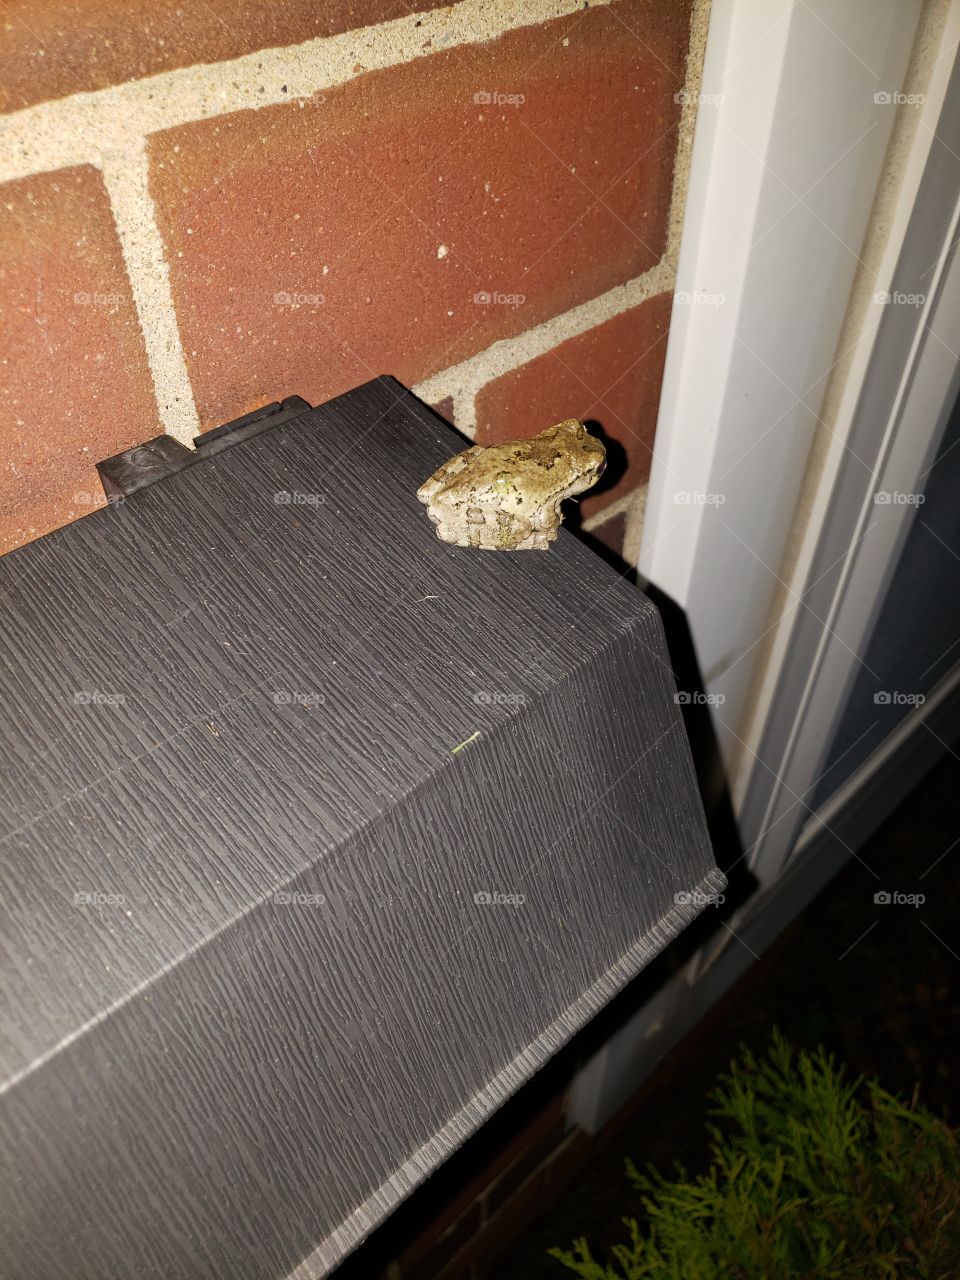 little frog buddy